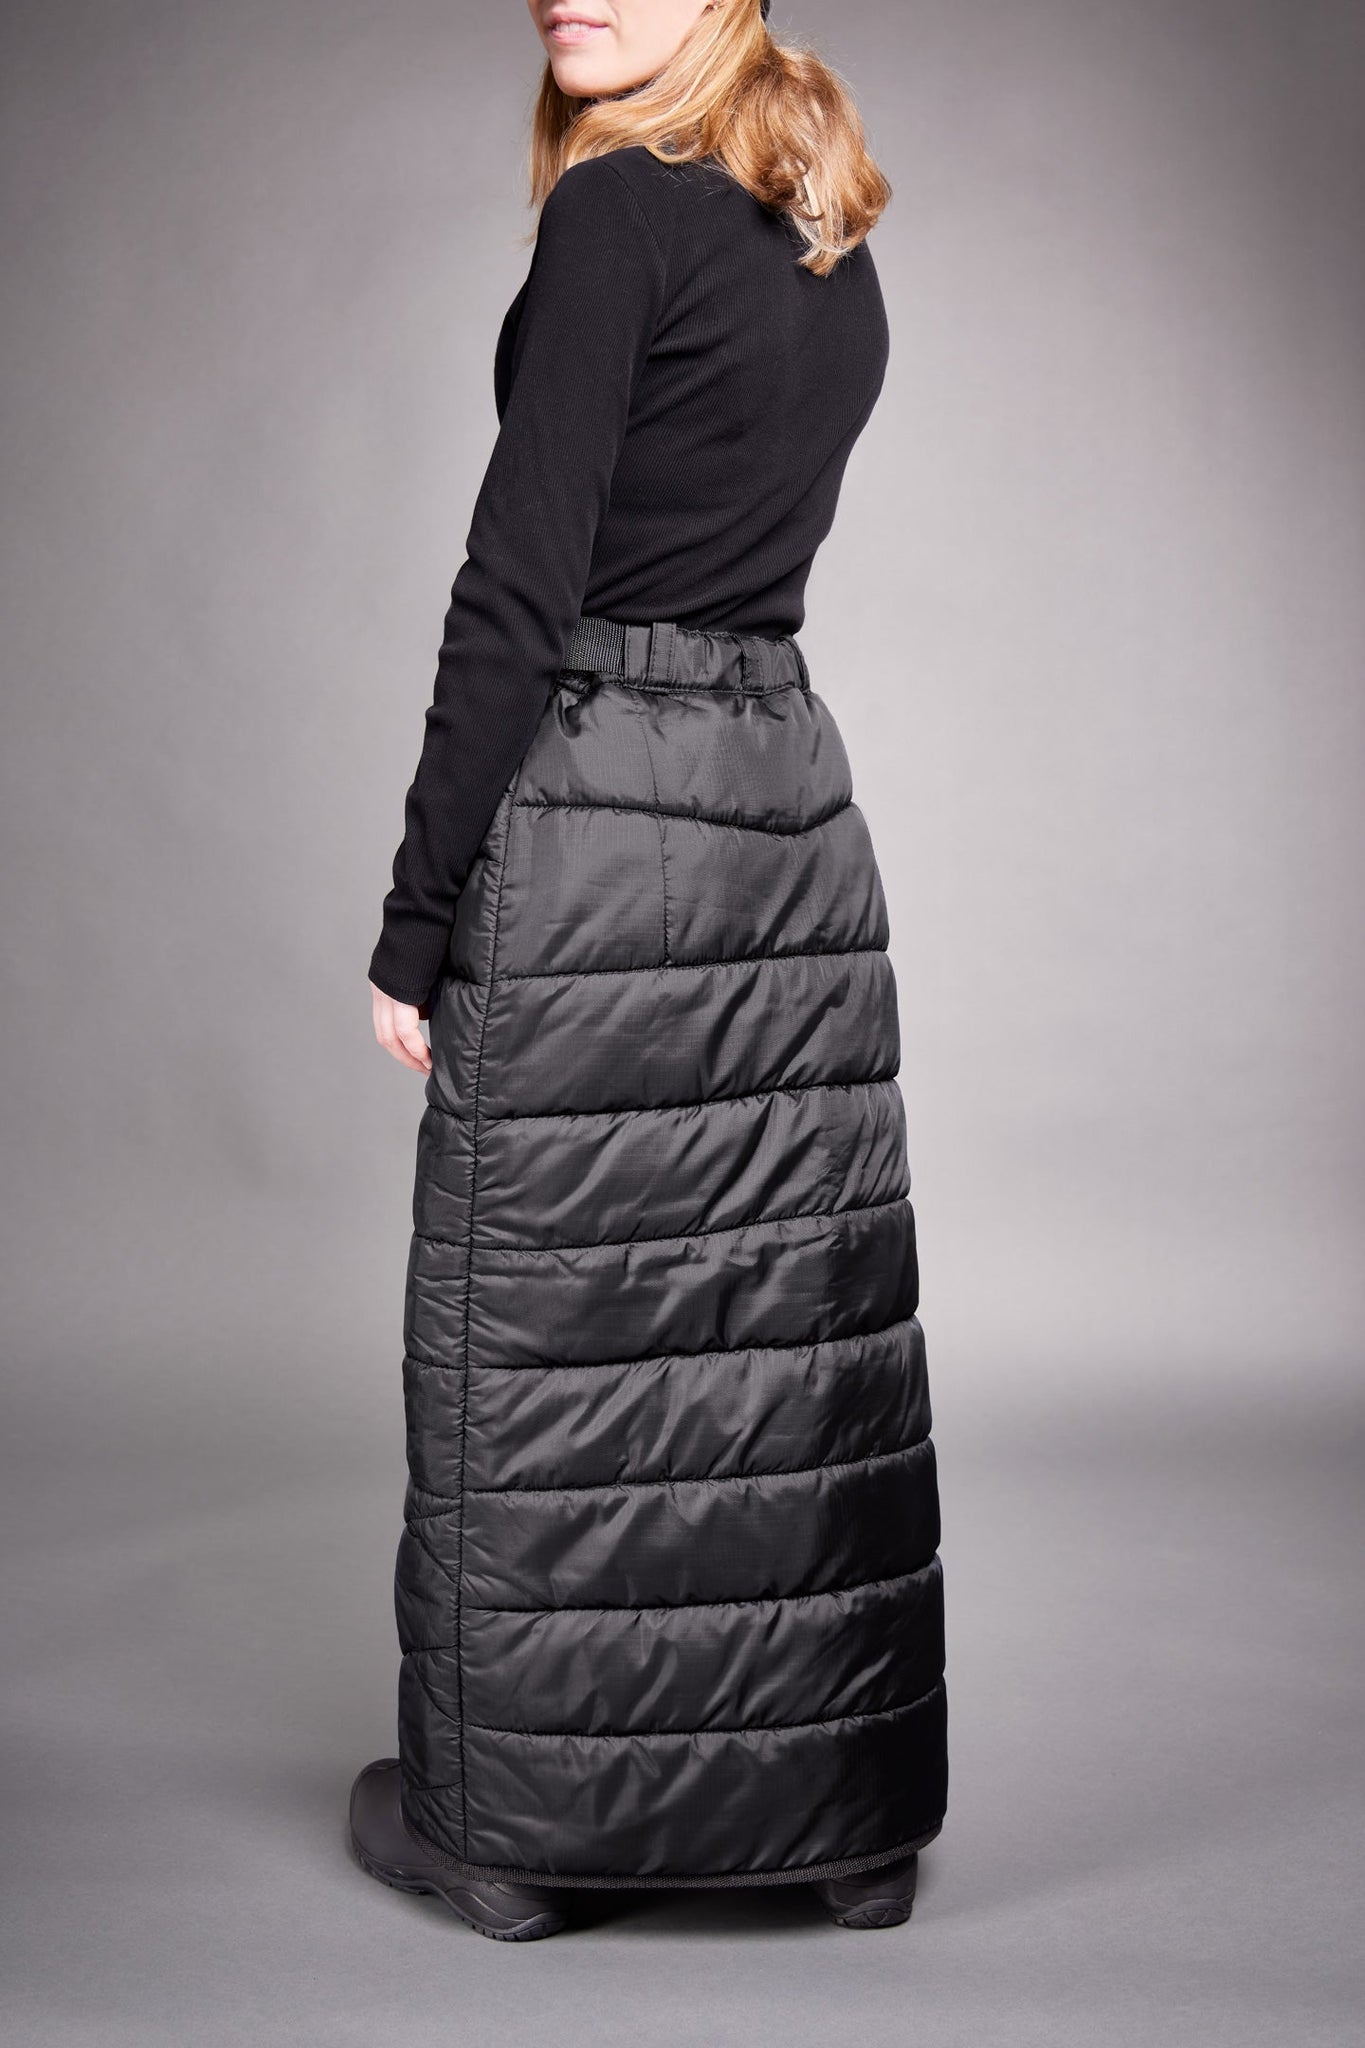 winter skirt made in canada milkweed black outdoor gear women